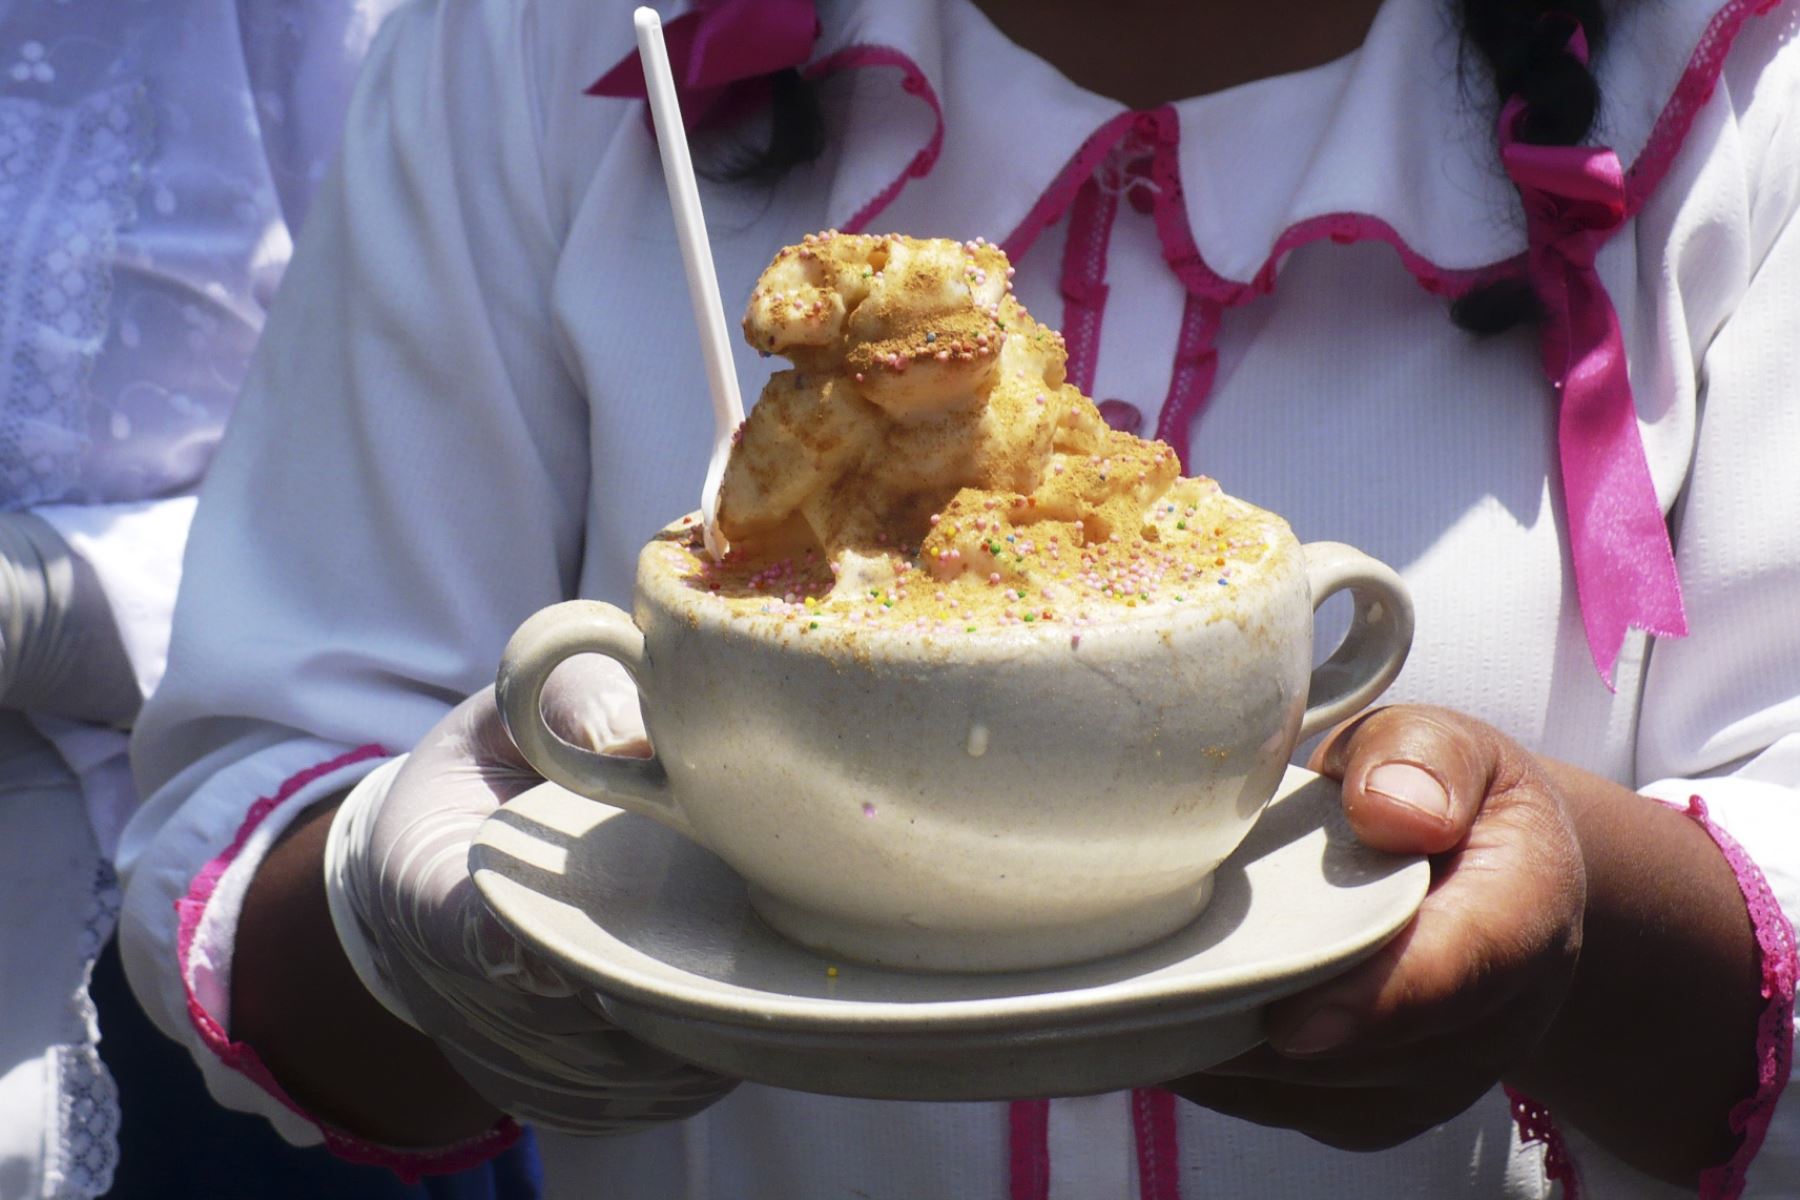 El queso helado, el postre clásico de Arequipa, es ahora motivo de orgullo de los arequipeños. ANDINA/archivo